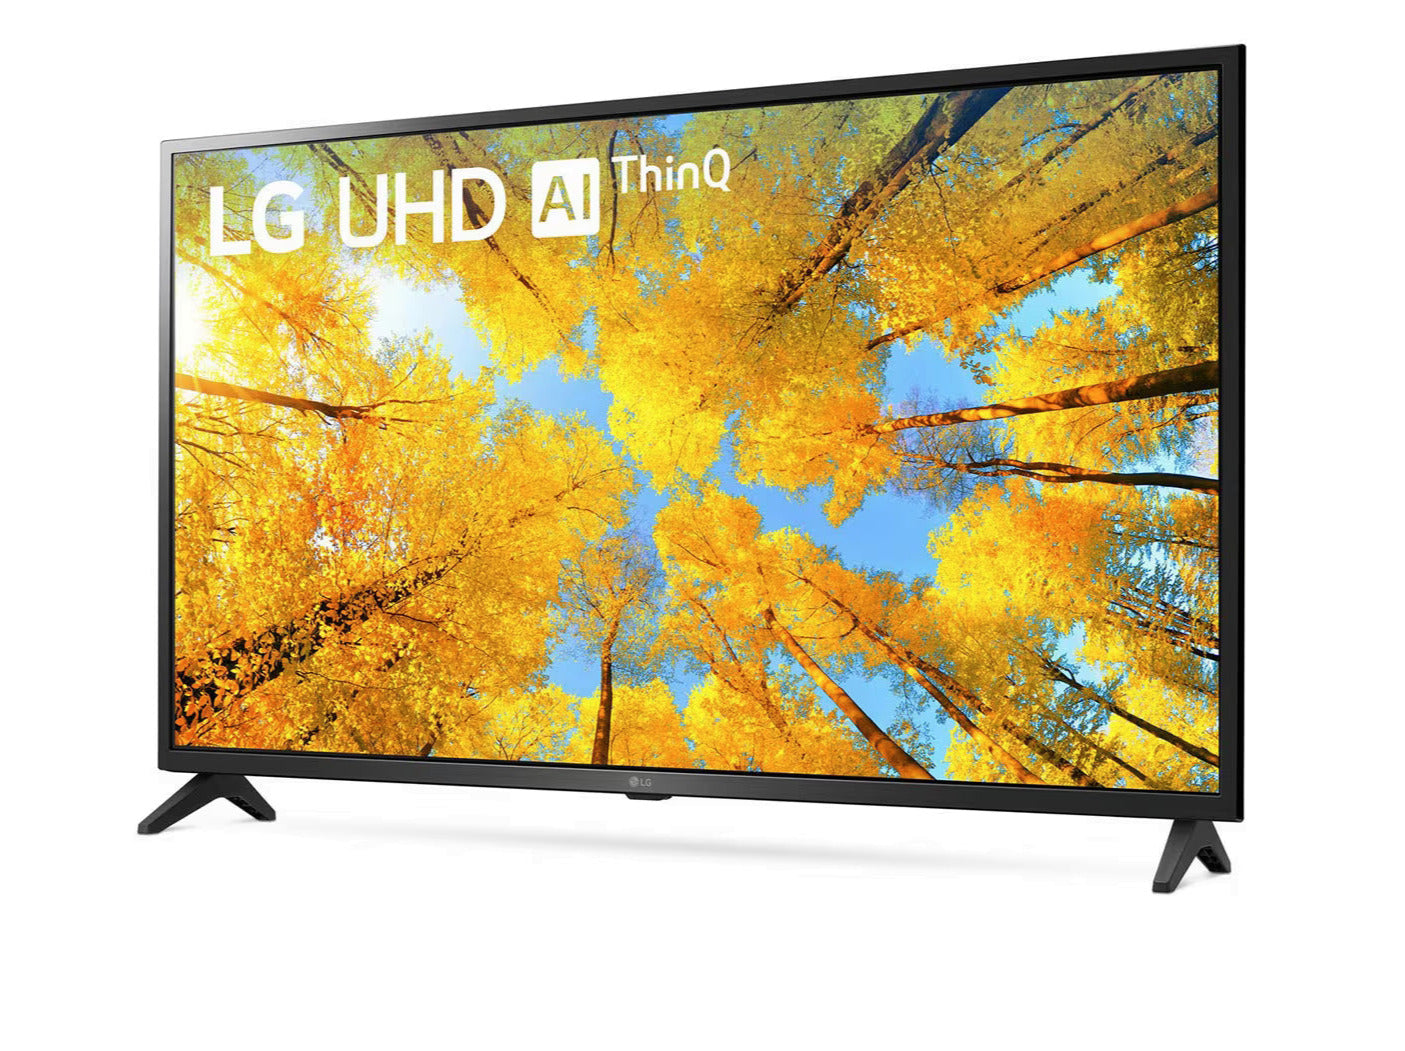 LG 55UQ7500 4K Smart TV előlnézetben enyhén balra fordítva, talpon. A kijelzőn őszies sárga levelű fák és lg uhd thinq ai logó.